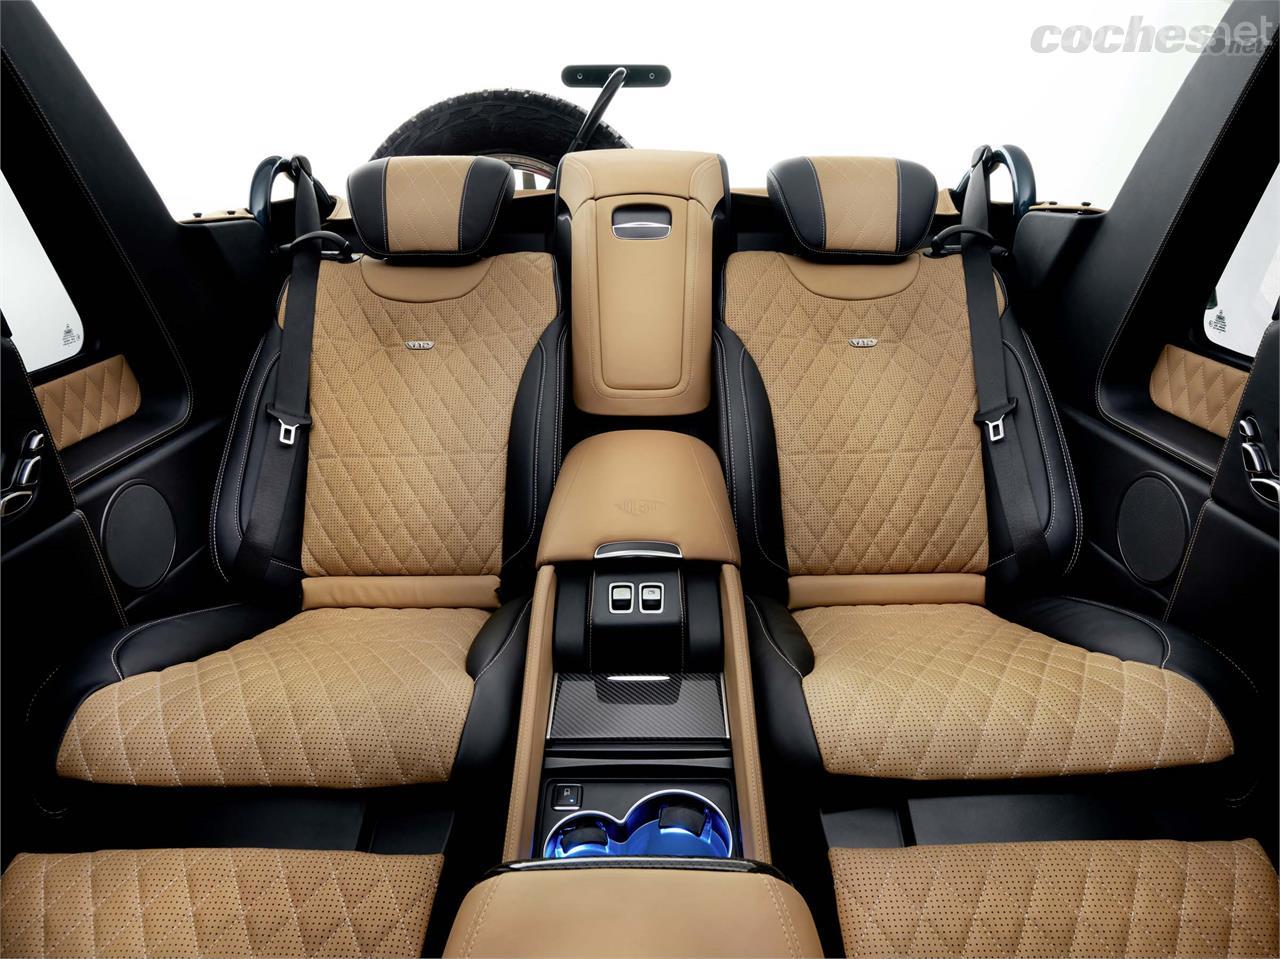 Los colosales asientos traseros son los que encontramos en la segunda fila del Mercedes-Maybach Clase S.